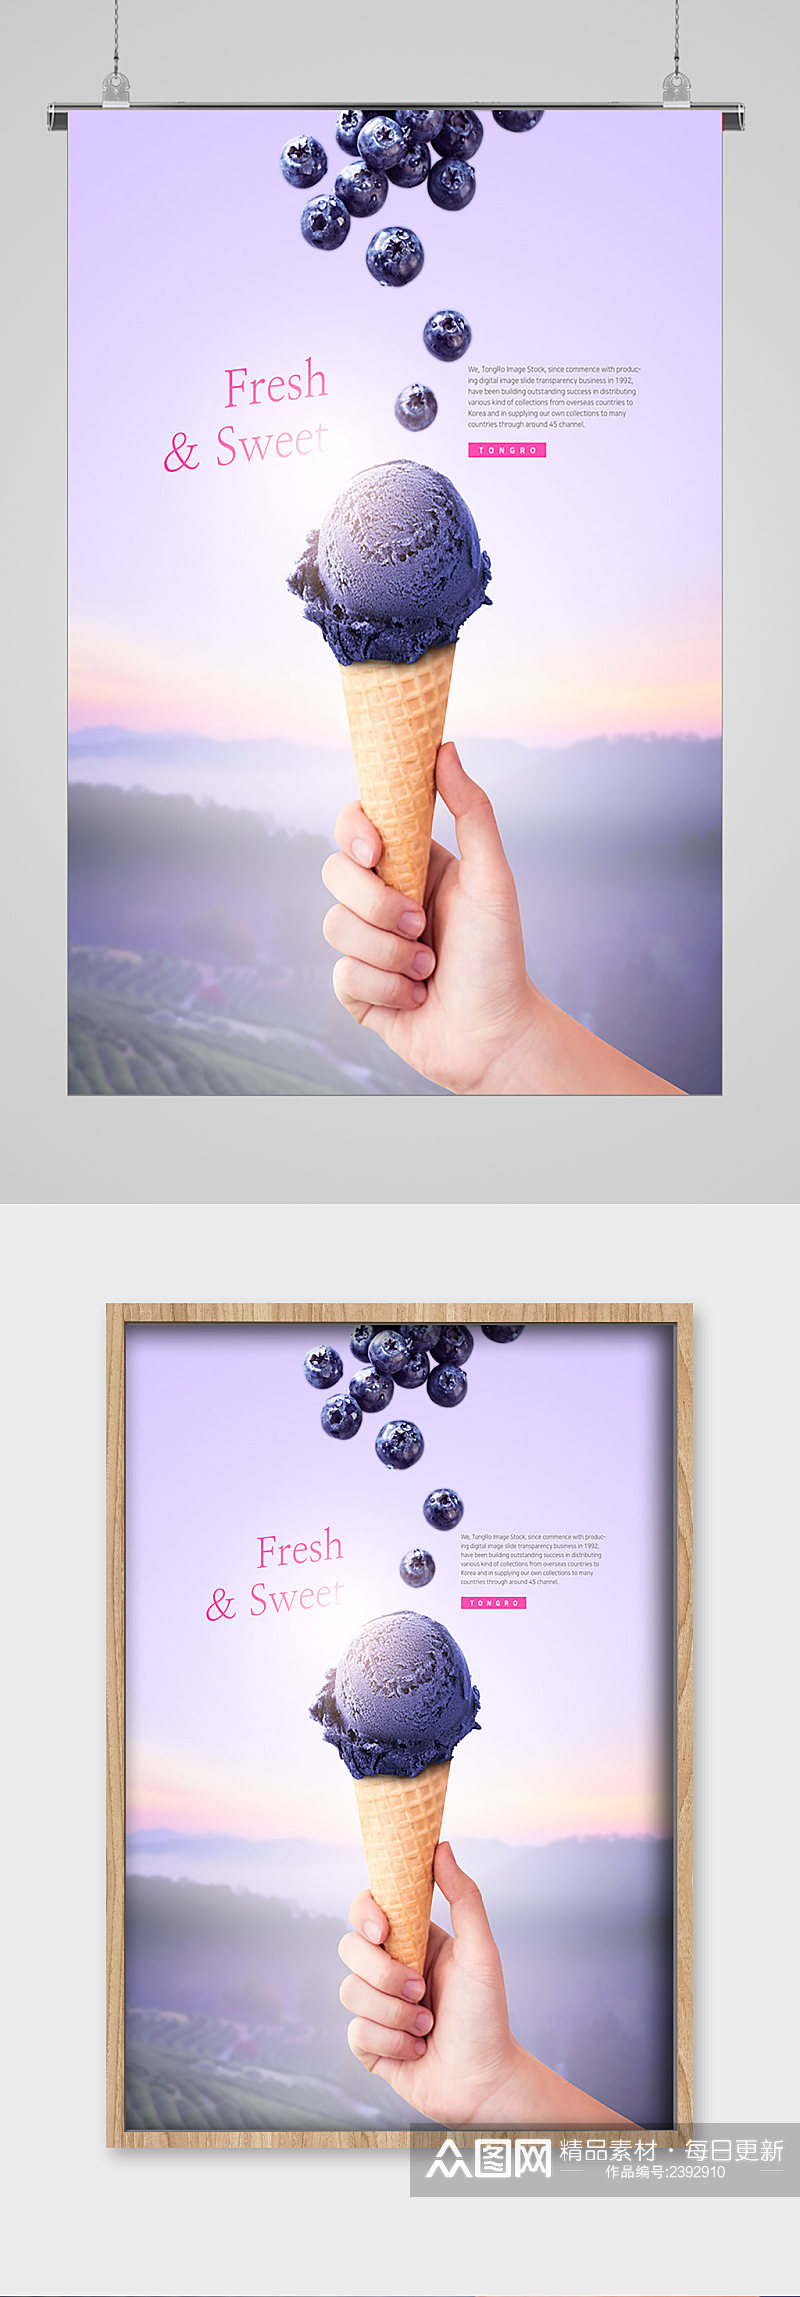 蓝莓冰淇淋宣传海报素材